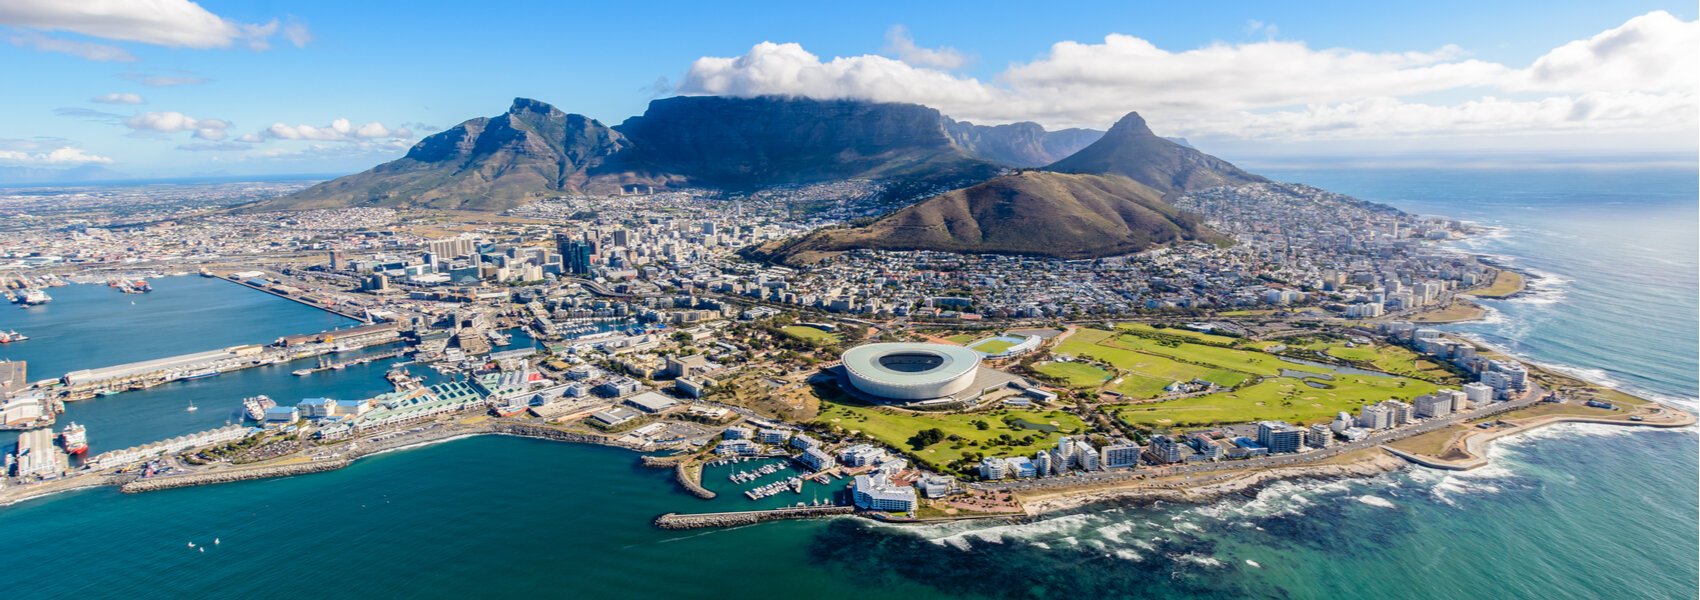 Panorama sur Le Cap en Afrique du Sud